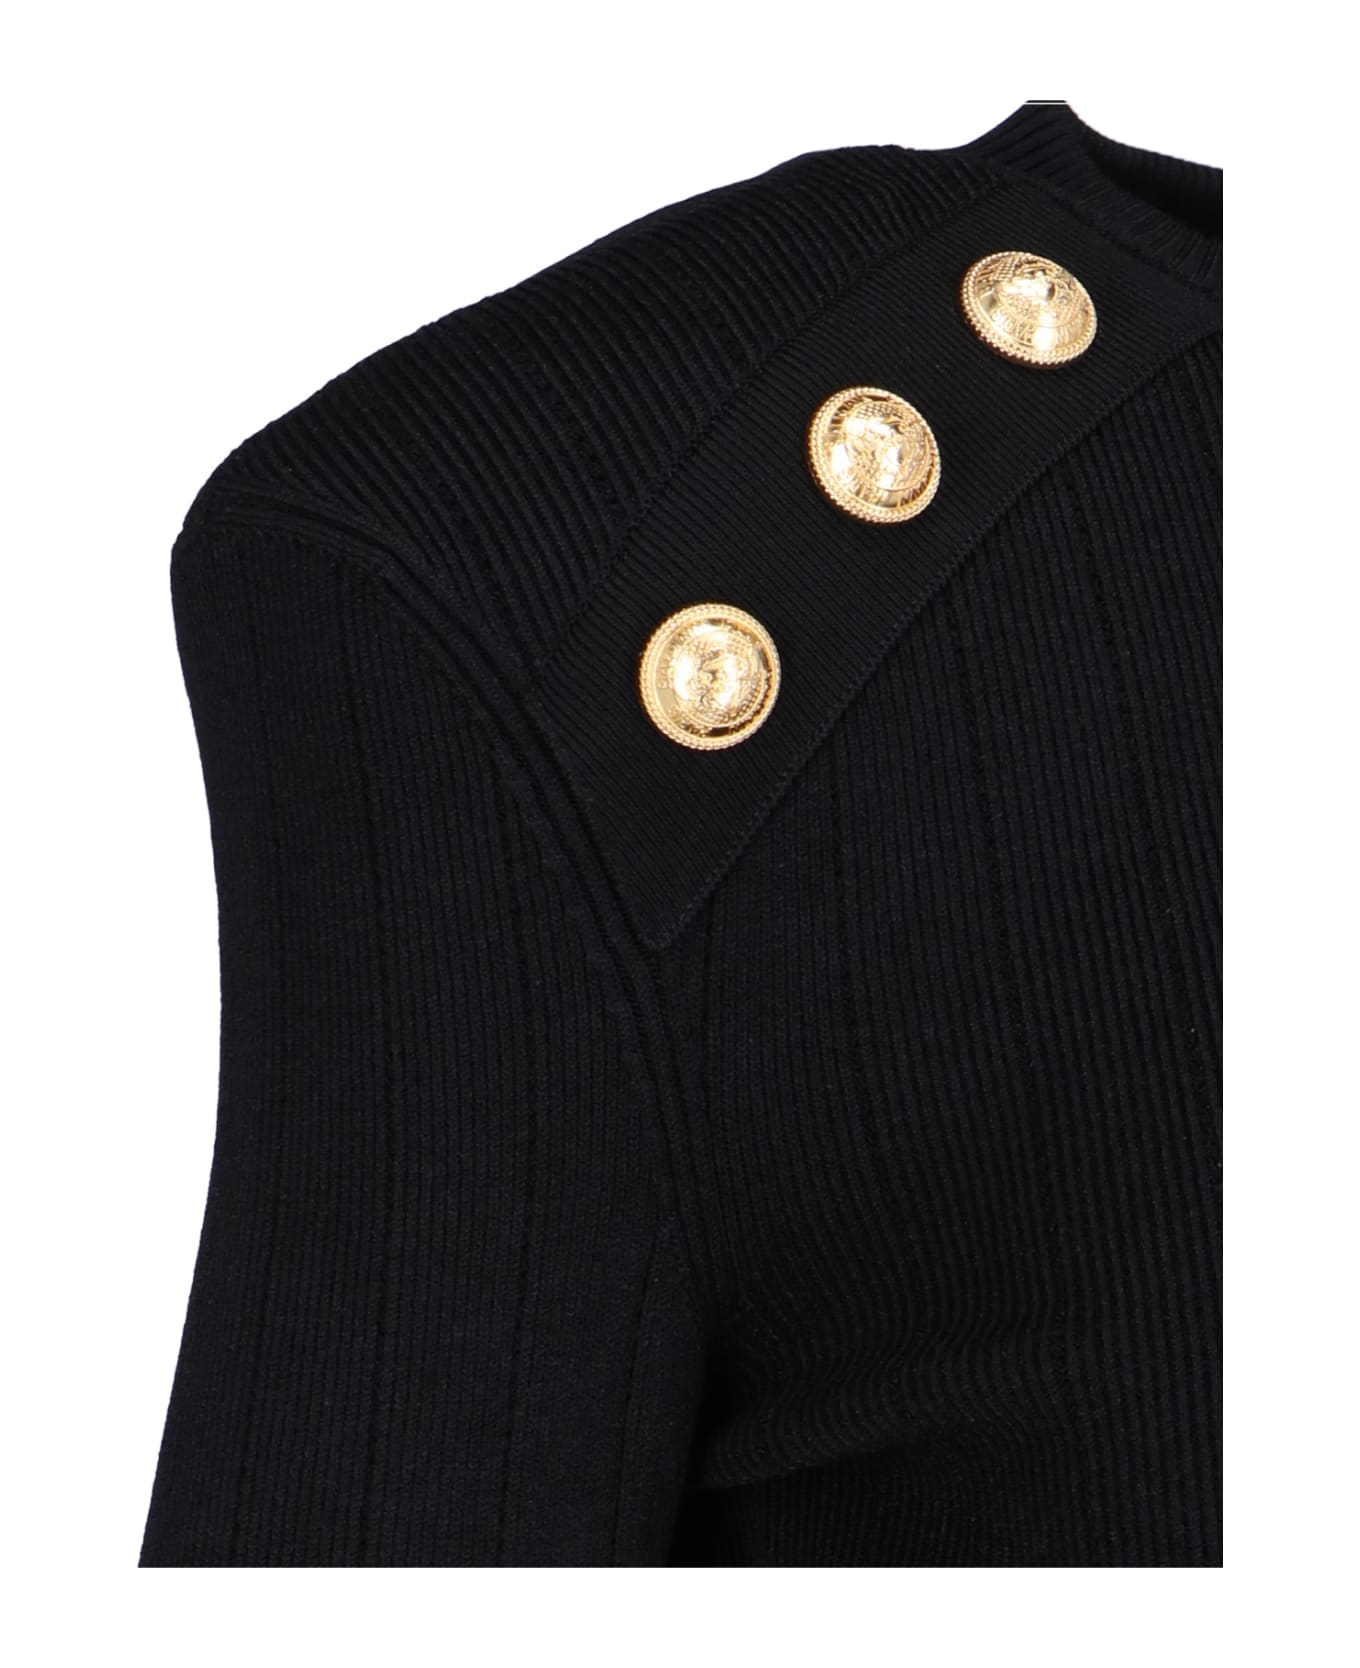 Balmain Gold Button Top - Black  